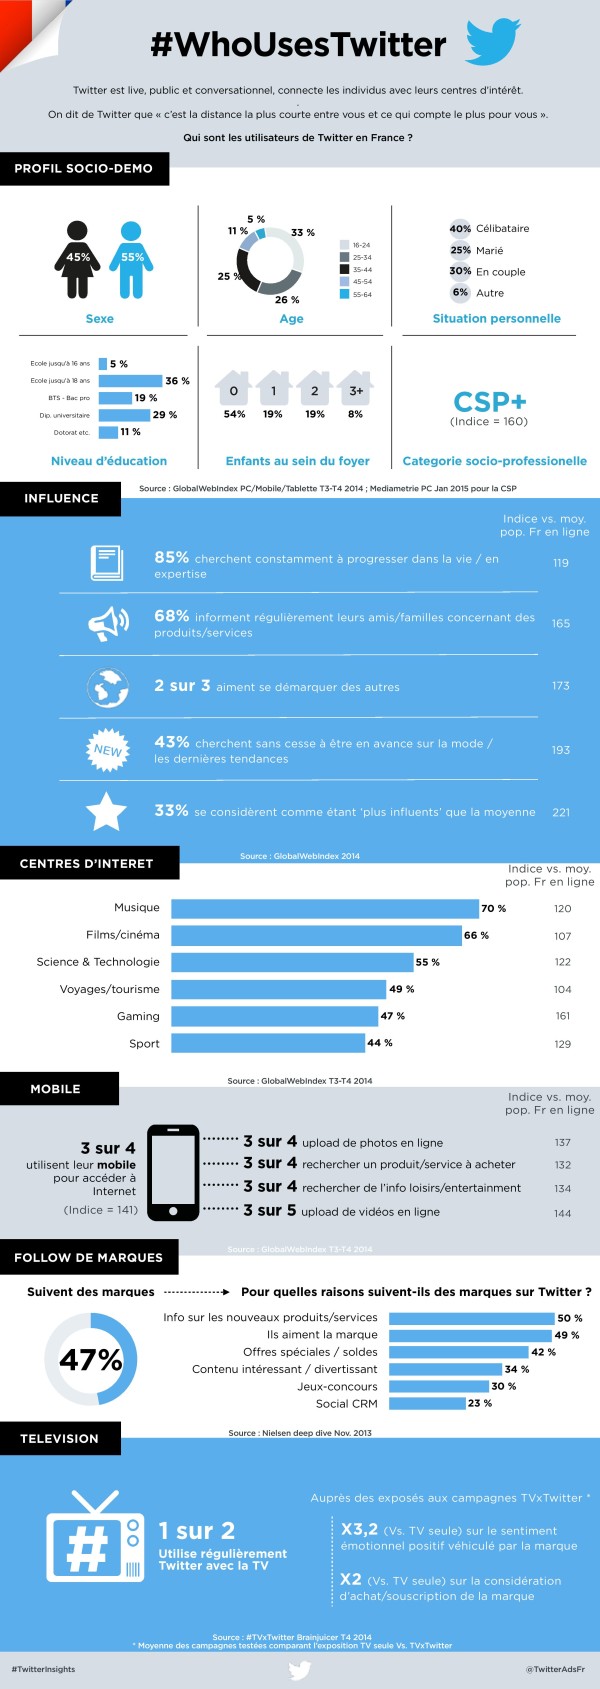 Nostromo, agence de communication, vous présente une infographie décrivant les utilisateurs de Twitter en France